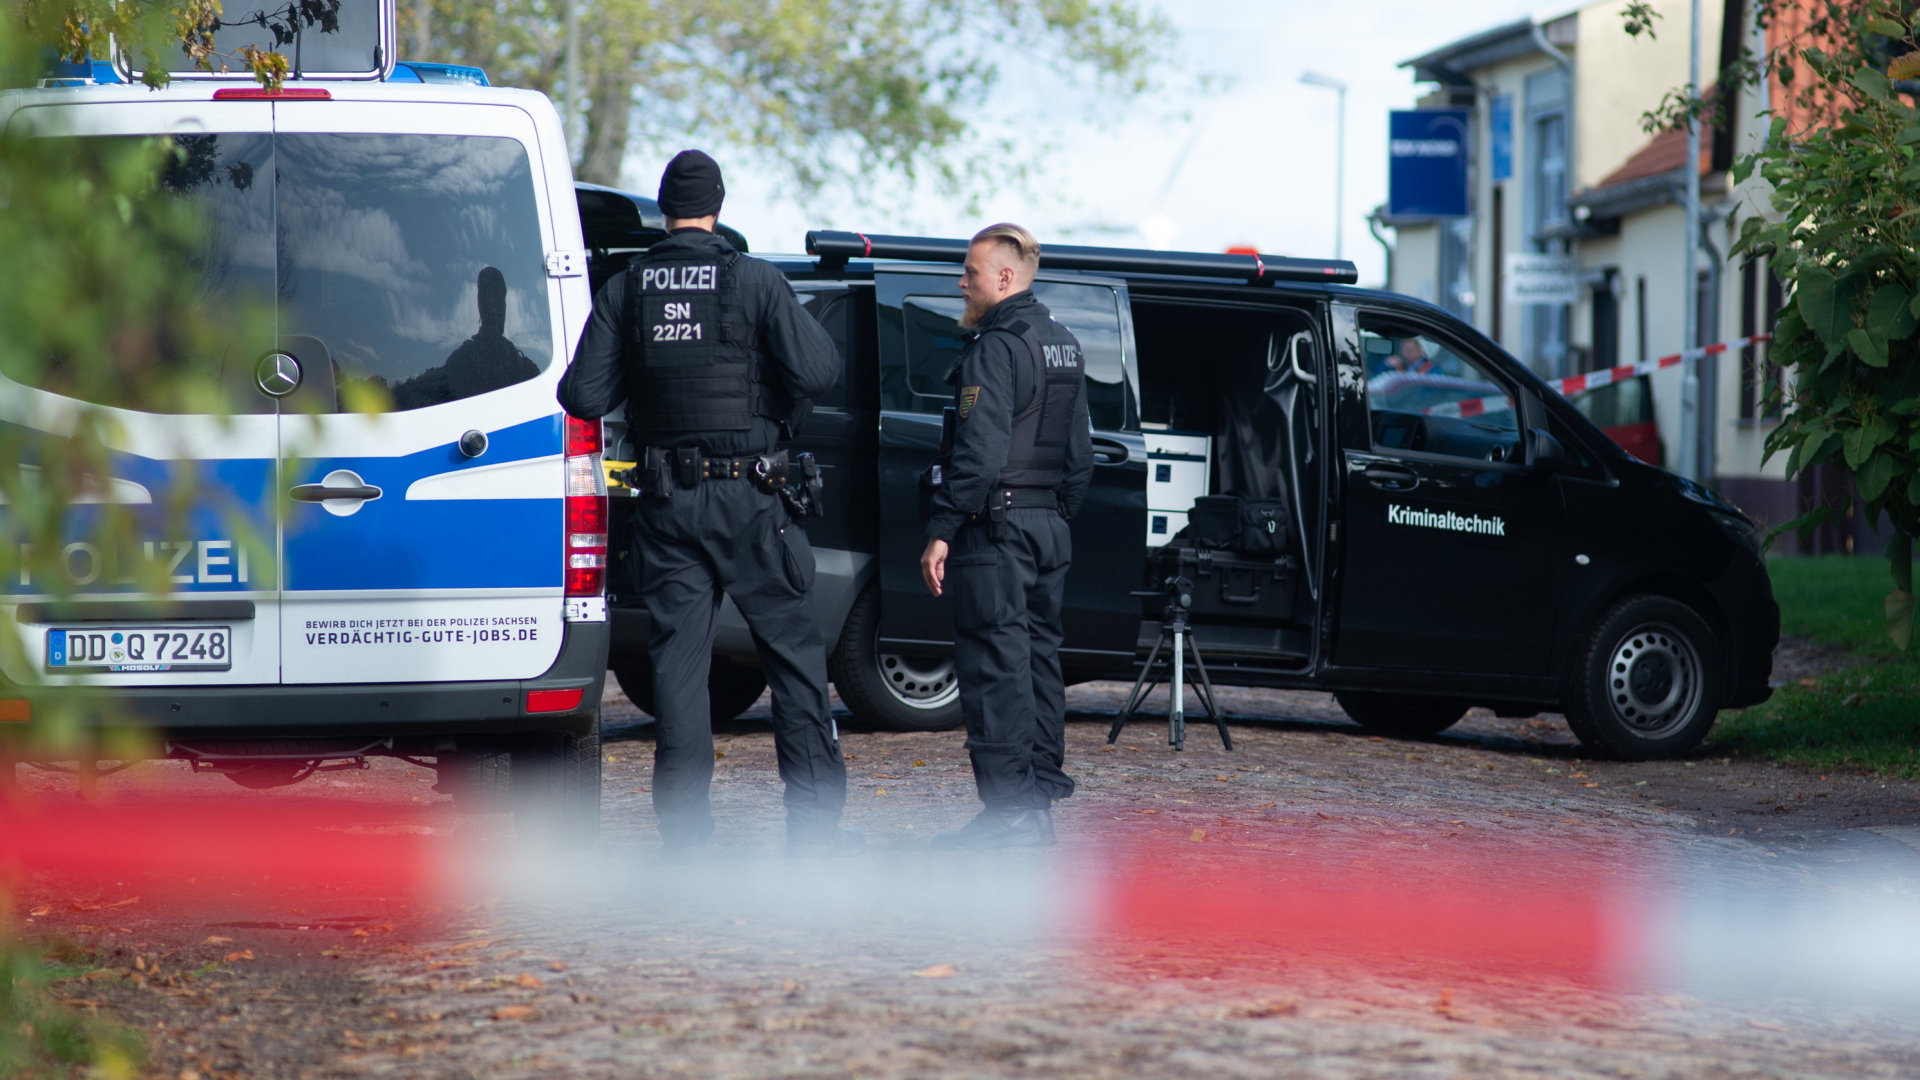 Polizisten und Kriminaltechnik in Halle | Bildquelle: dpa